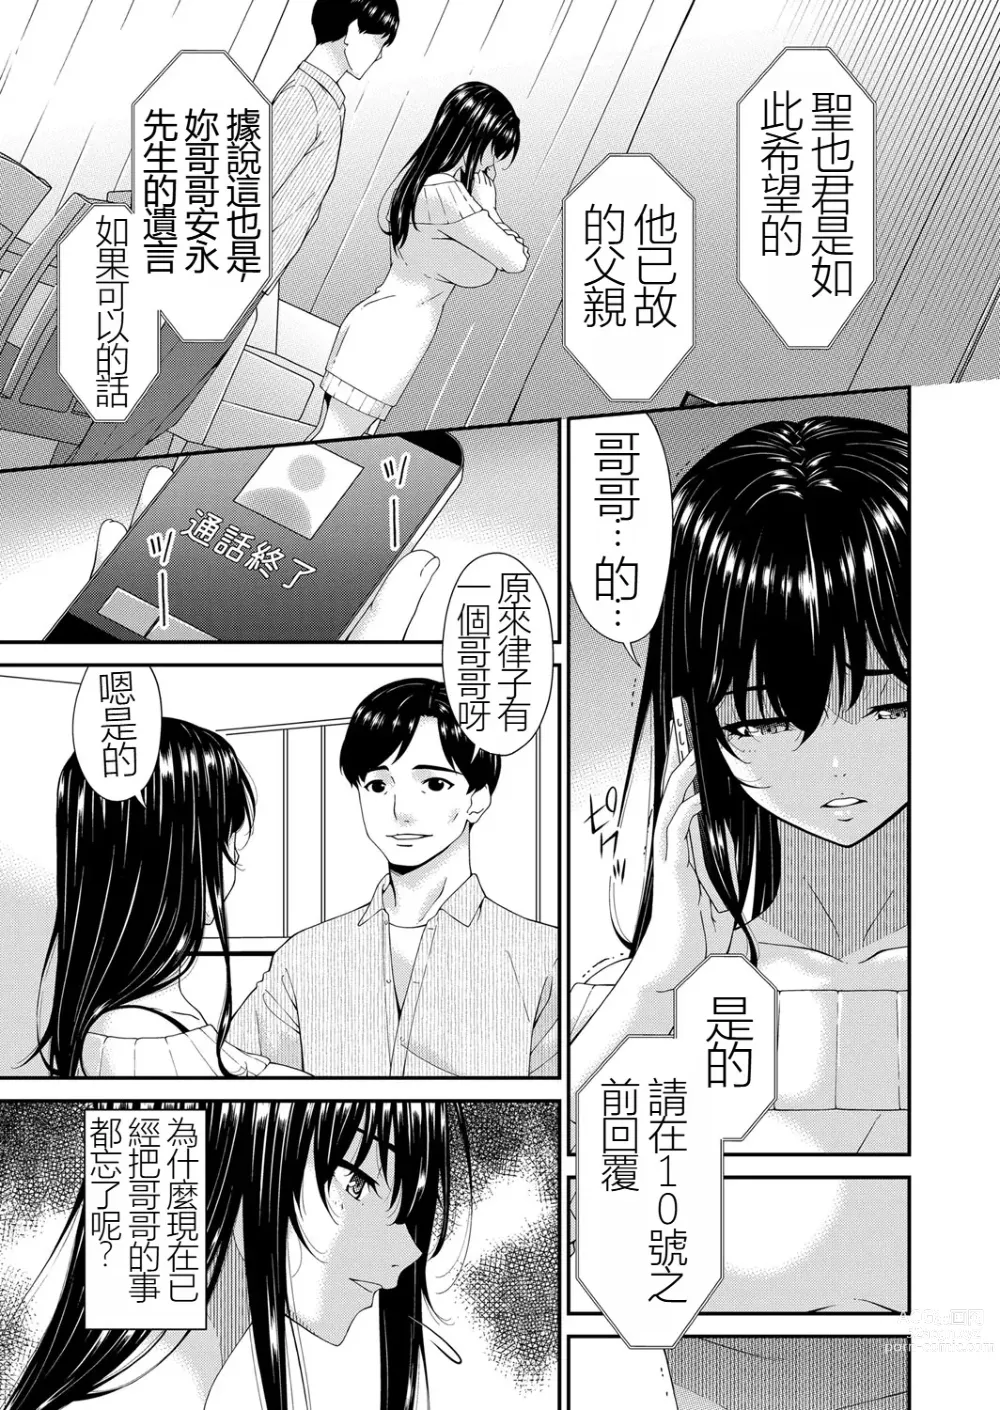 Page 5 of manga Saiin Kazoku Completed